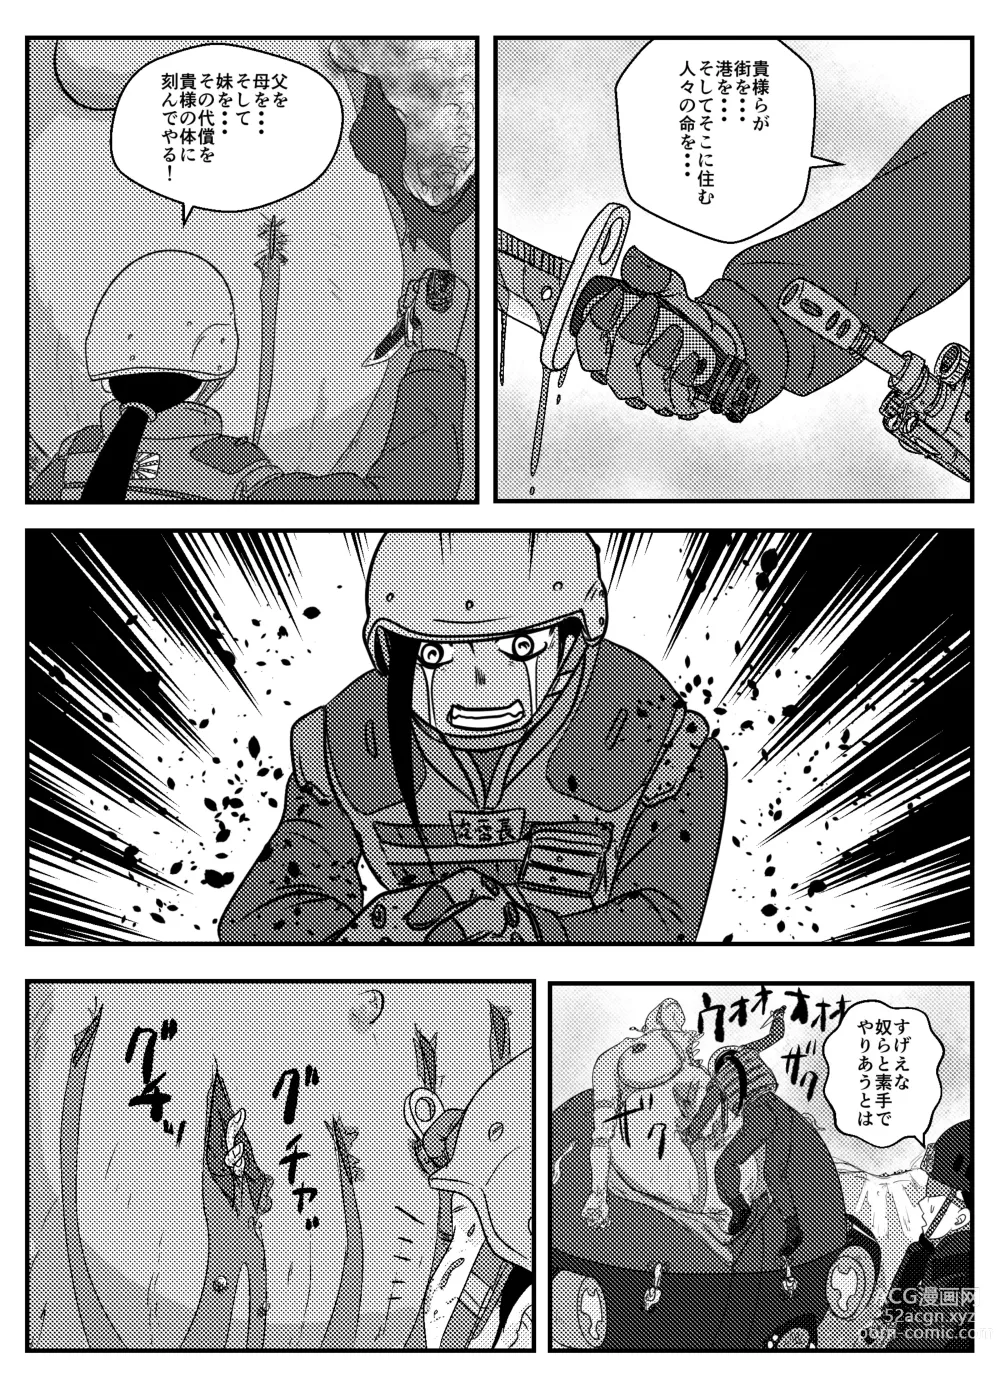 Page 9 of doujinshi Josei Teitoku no Miru Yume wa